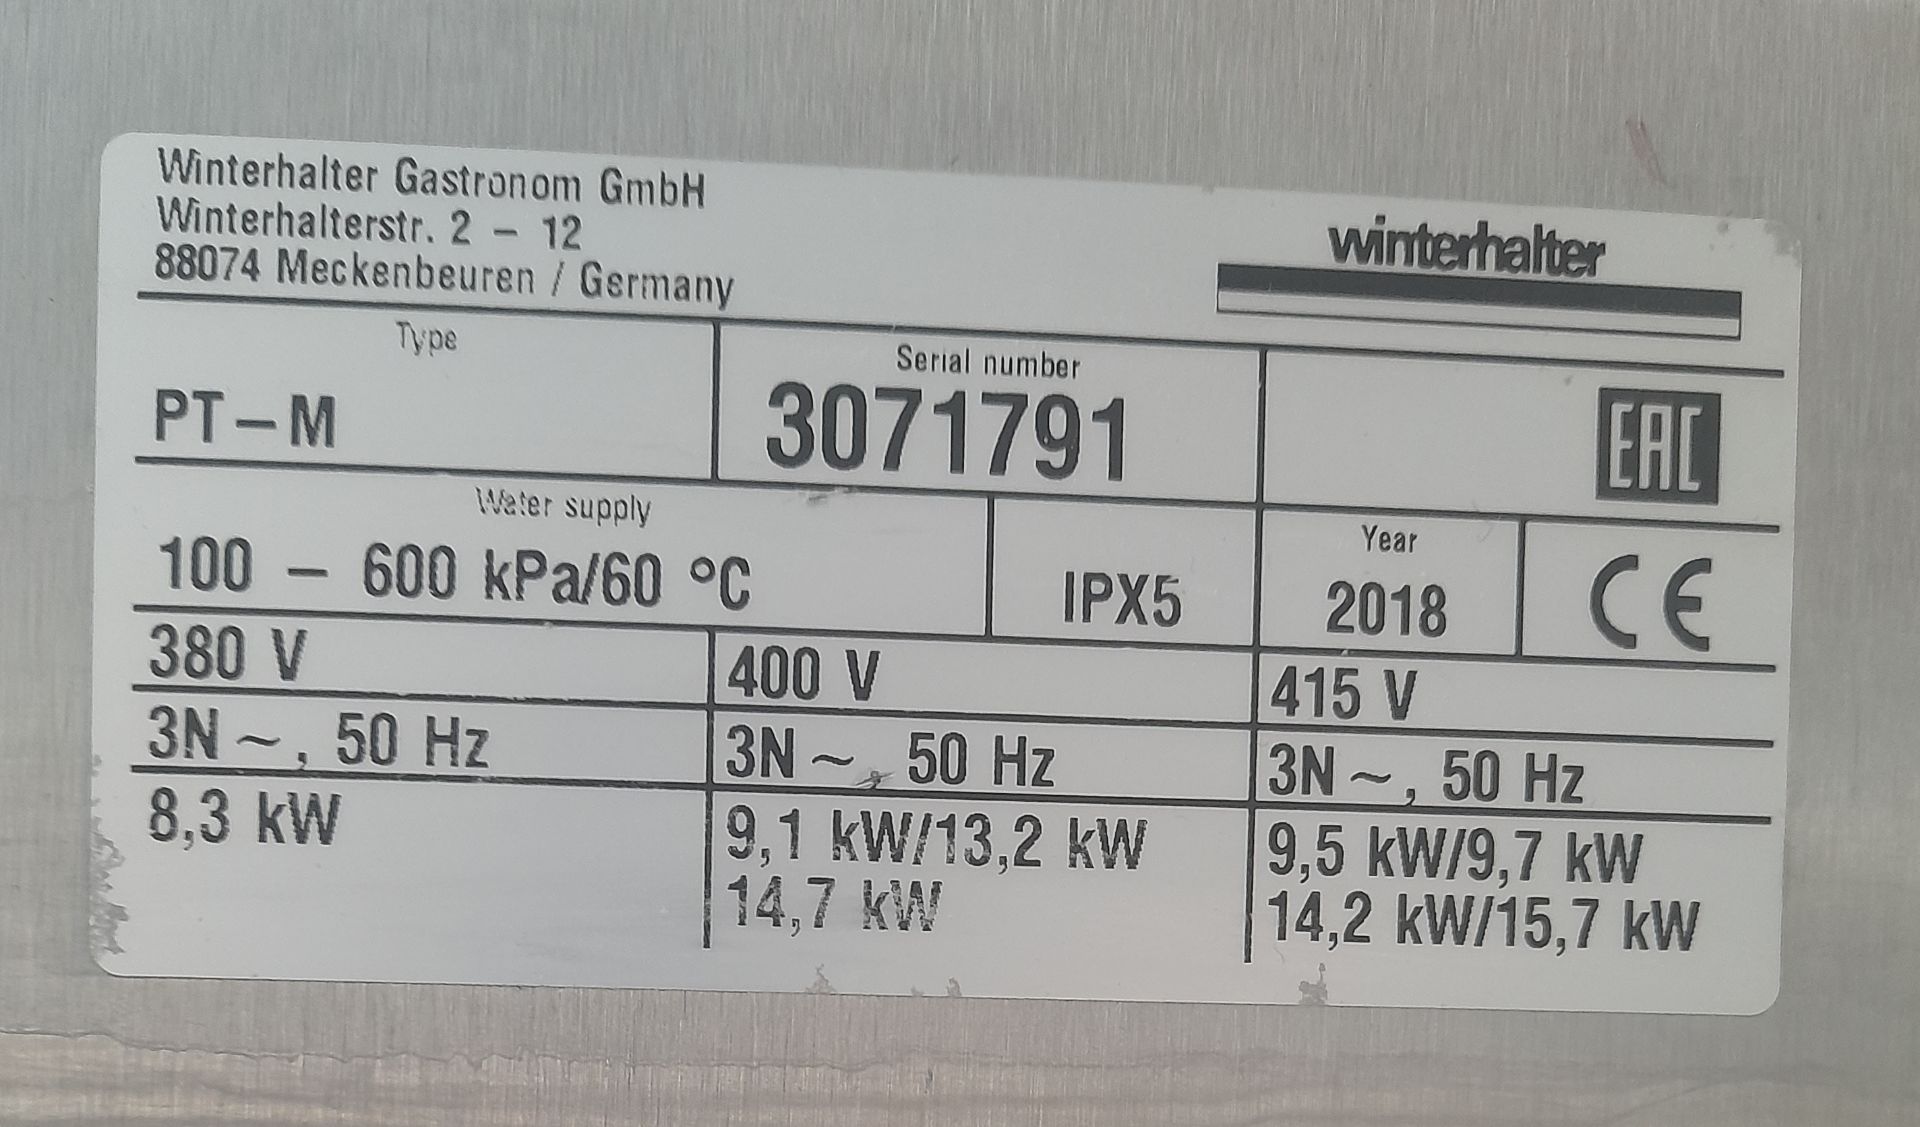 1 x Winterhalter PT-M Passthrough Dishwasher - Year 2018 - 3 Phase Power - Image 5 of 7